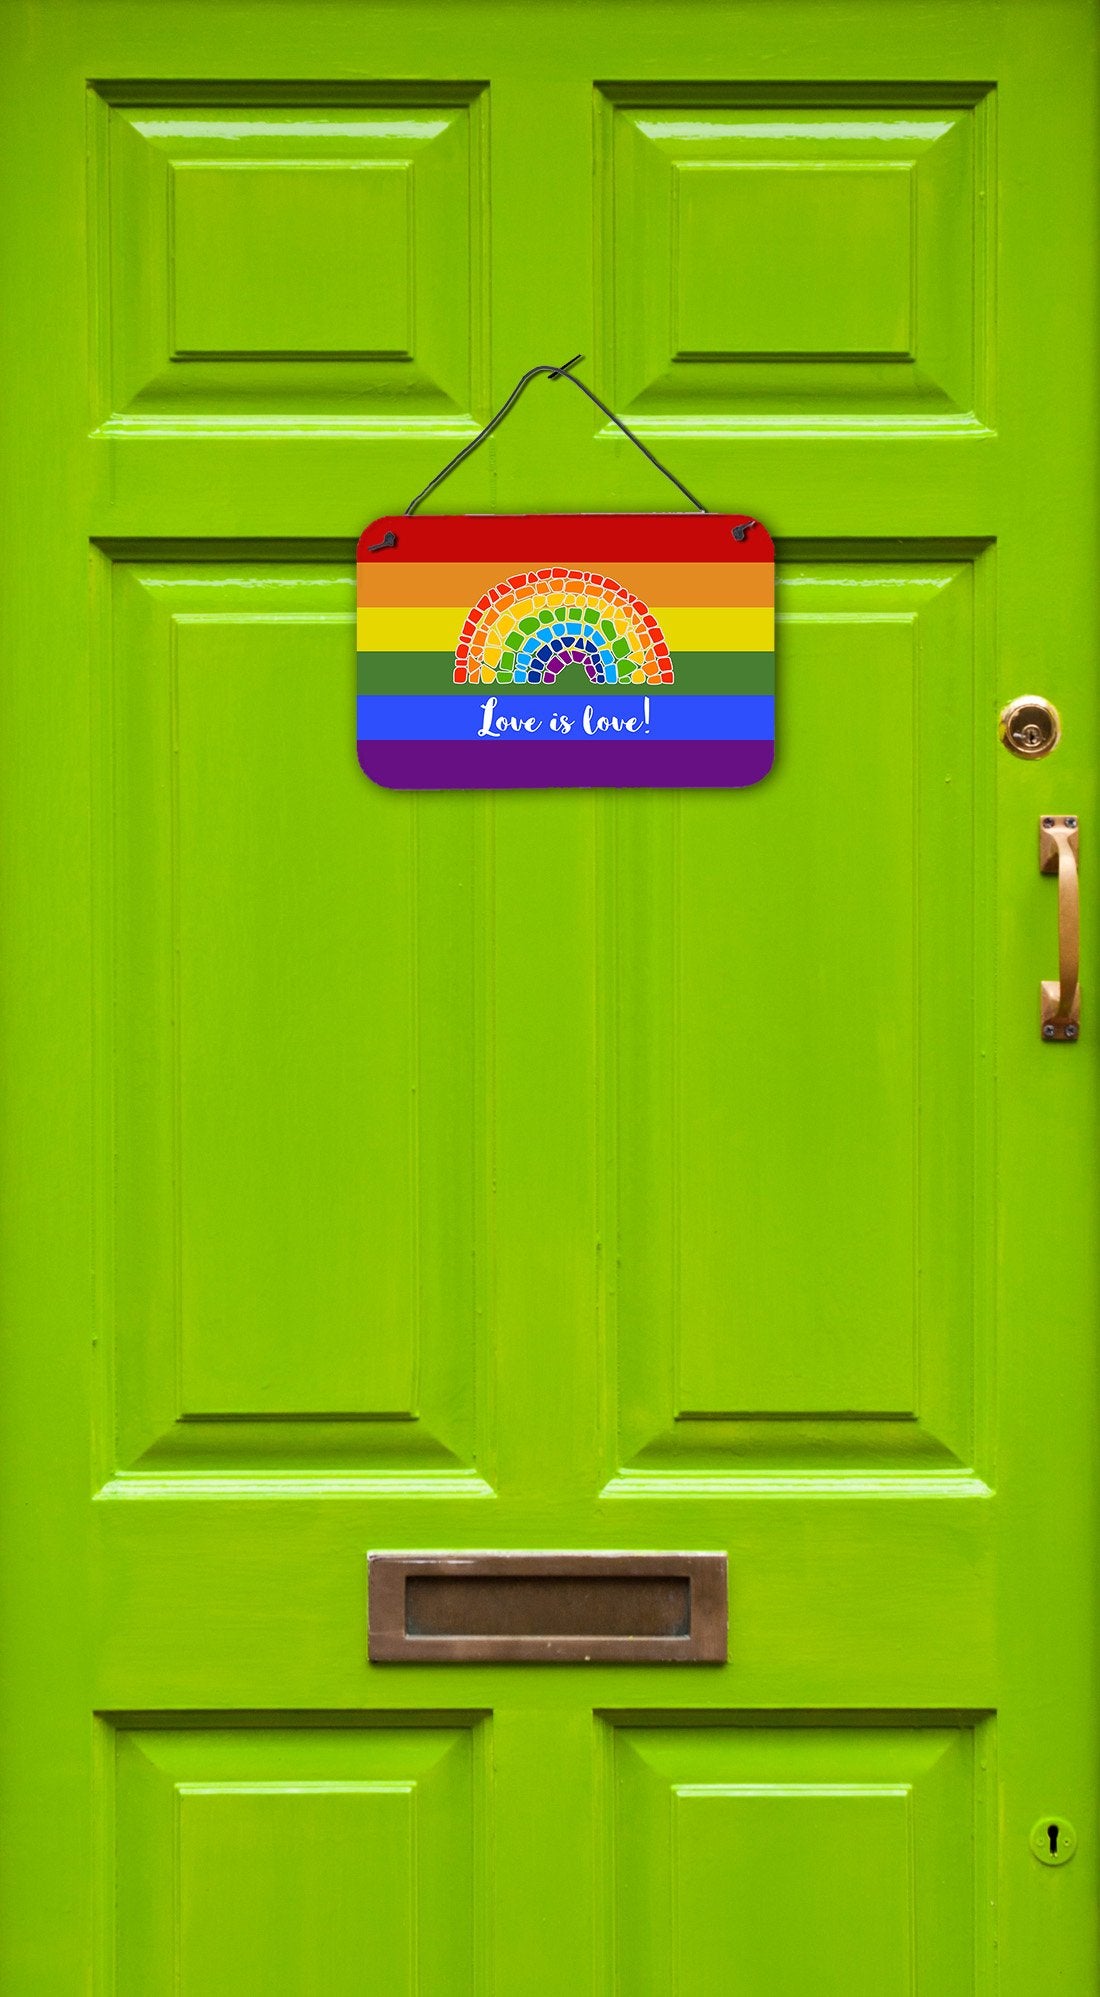 Buy this Gay Pride Love is Love Mosaic Rainbow Wall or Door Hanging Prints